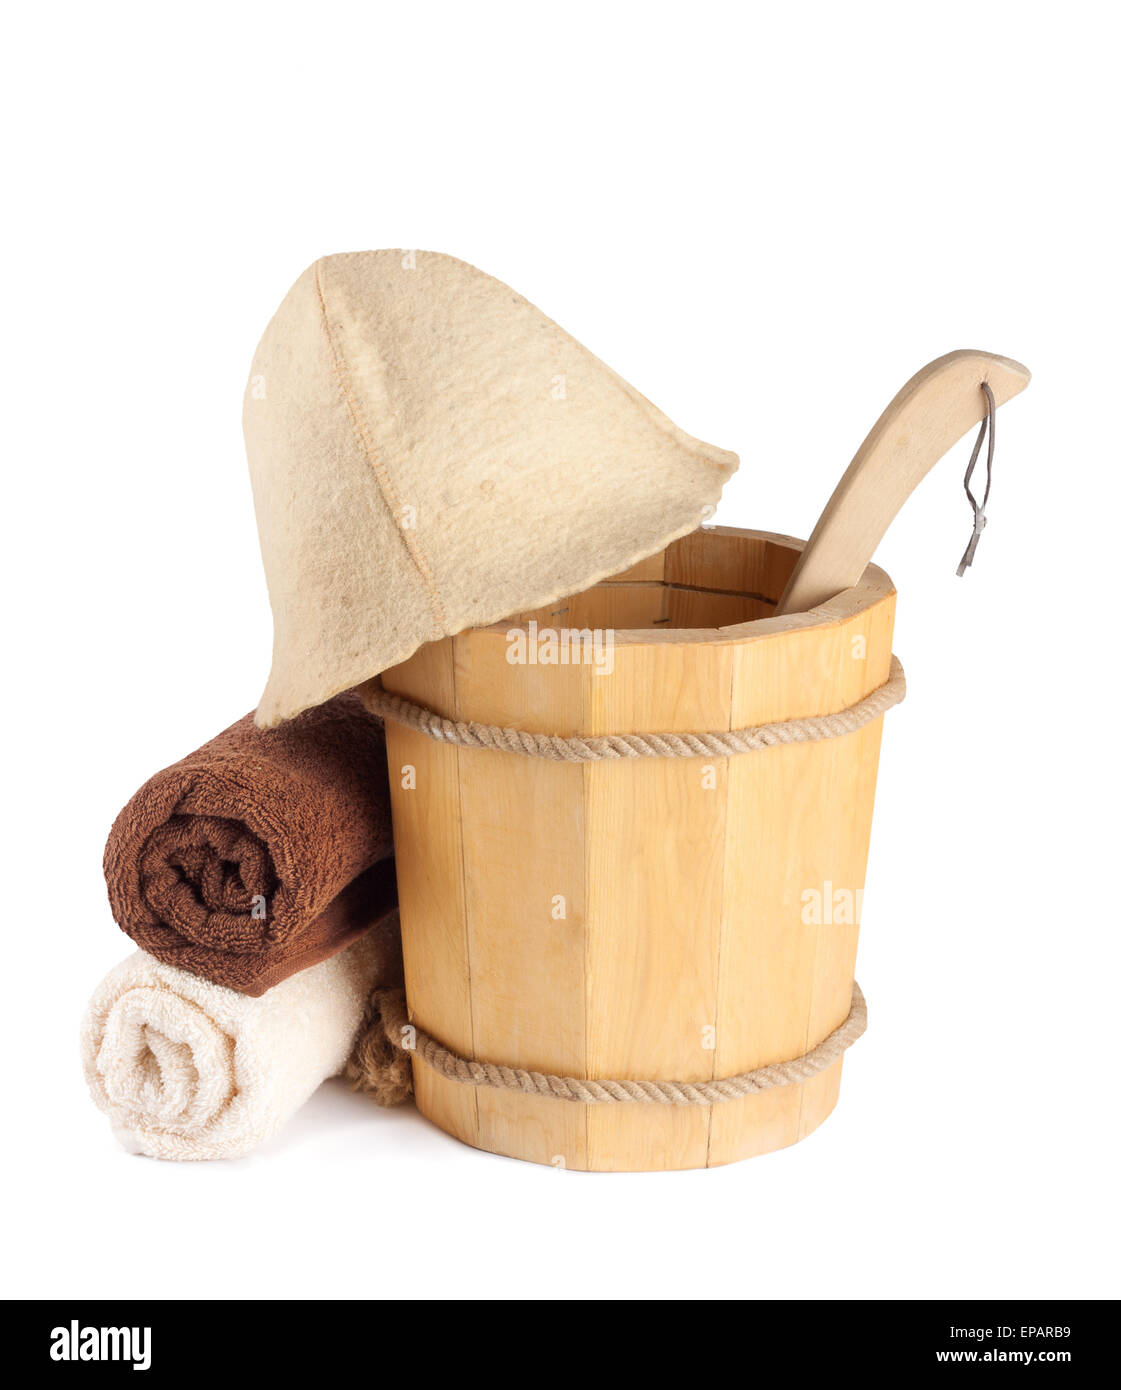 Cucchiaio di legno con la siviera e asciugamani per la sauna isolati su sfondo bianco Foto Stock